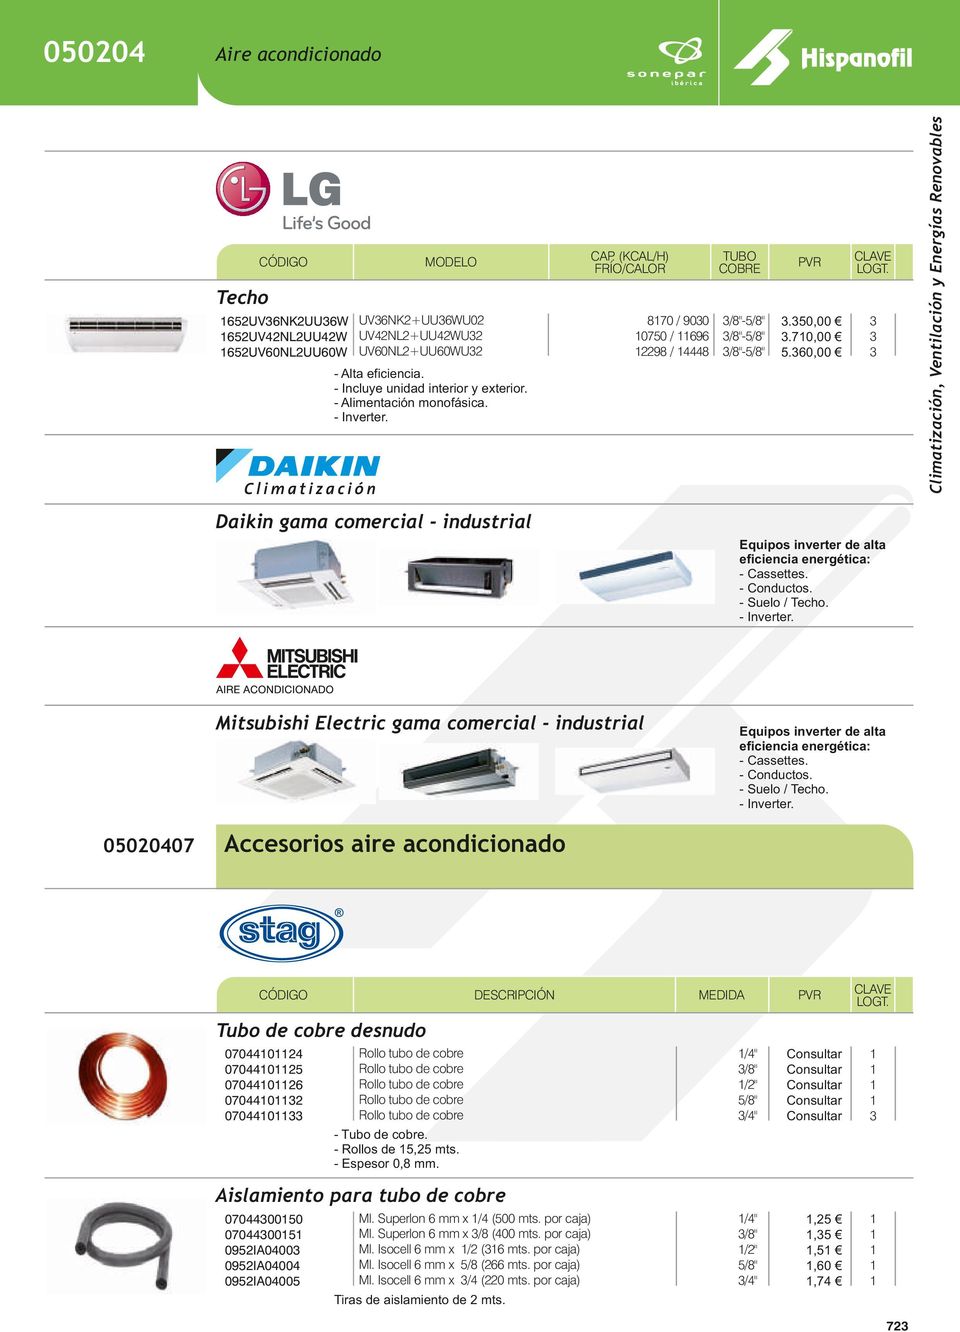 exterior. Daikin gama comercial - industrial quipos inverter de alta eficiencia energética: - Cassettes. - Conductos. - Suelo / Techo.